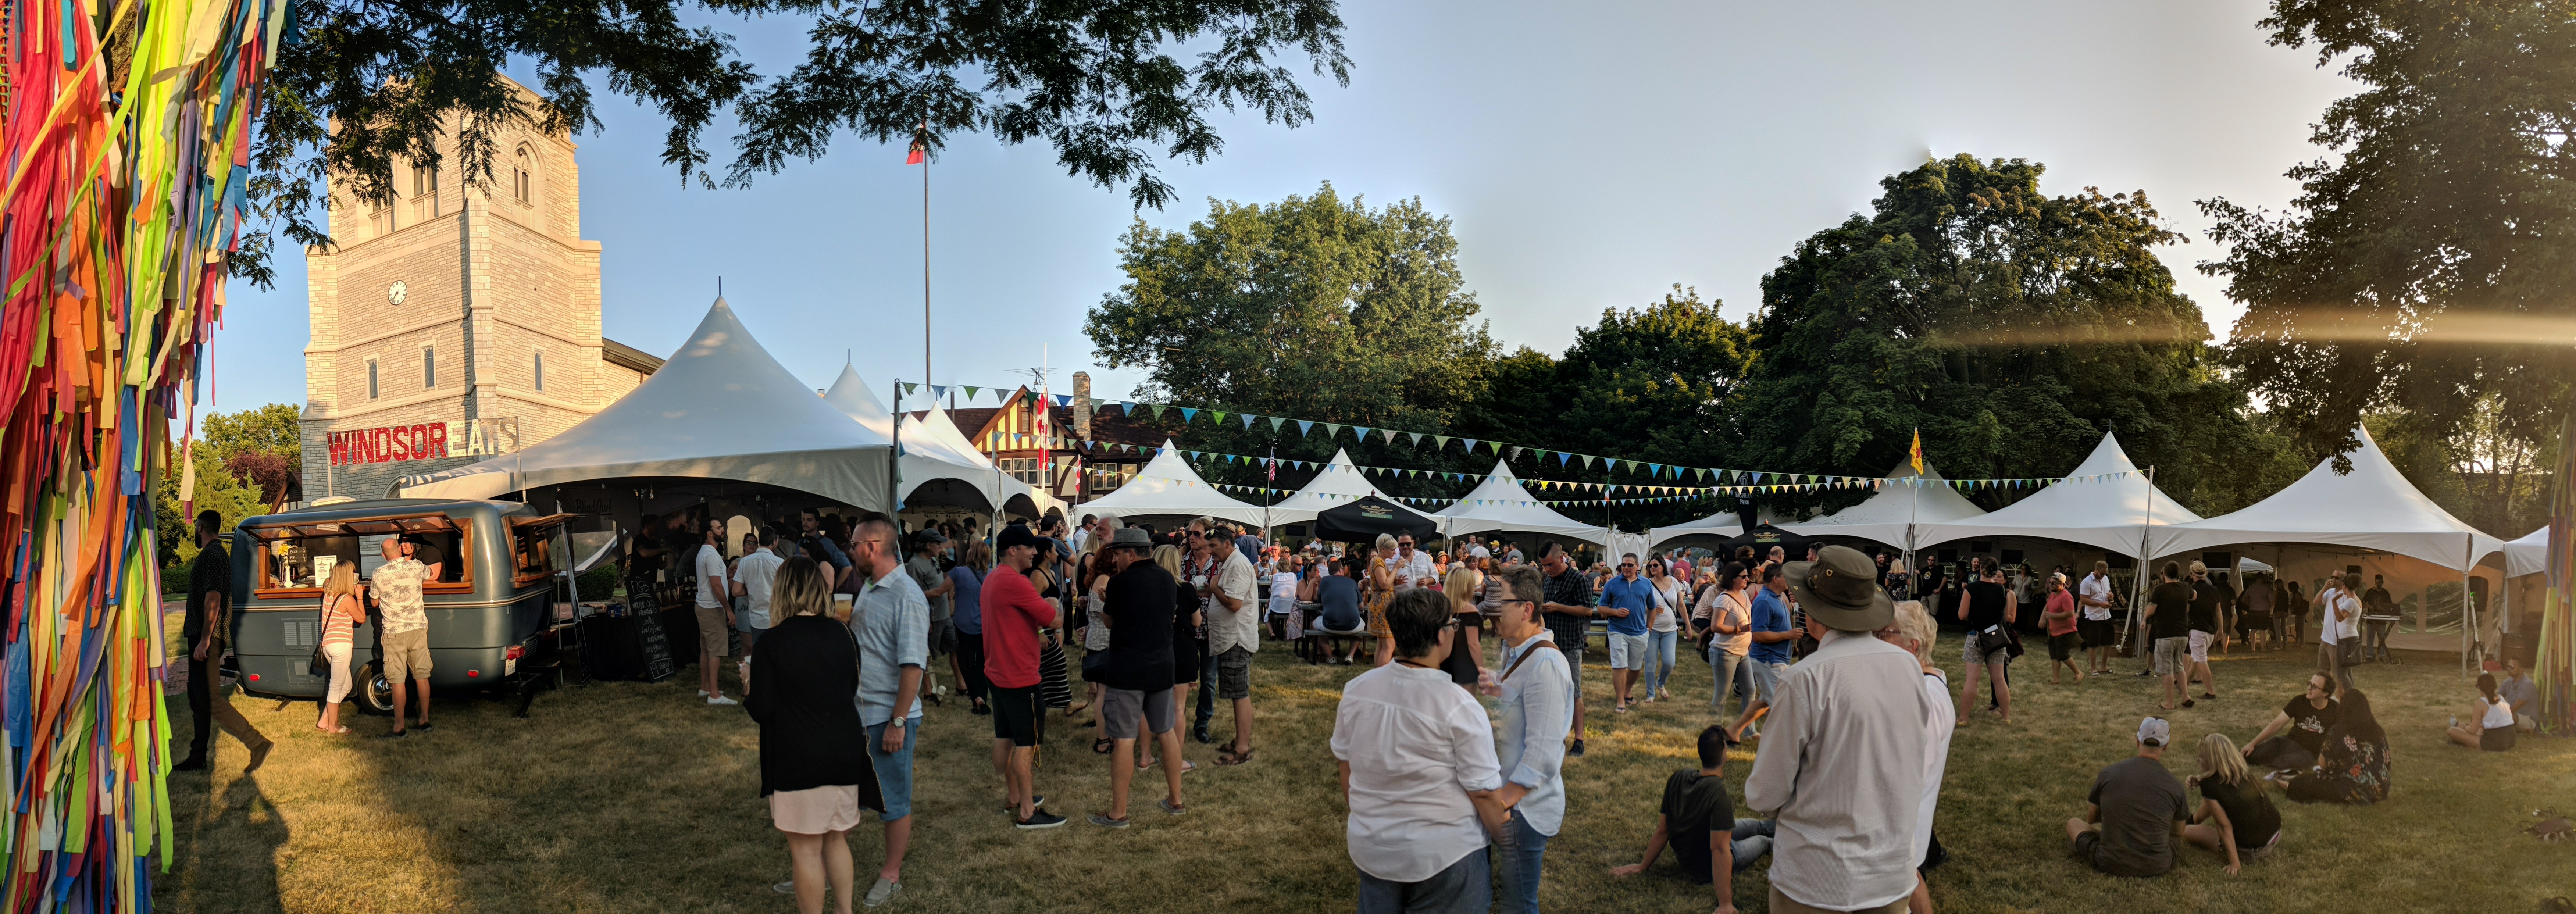 The Whiskytown Festival in Windsor, Ontario.